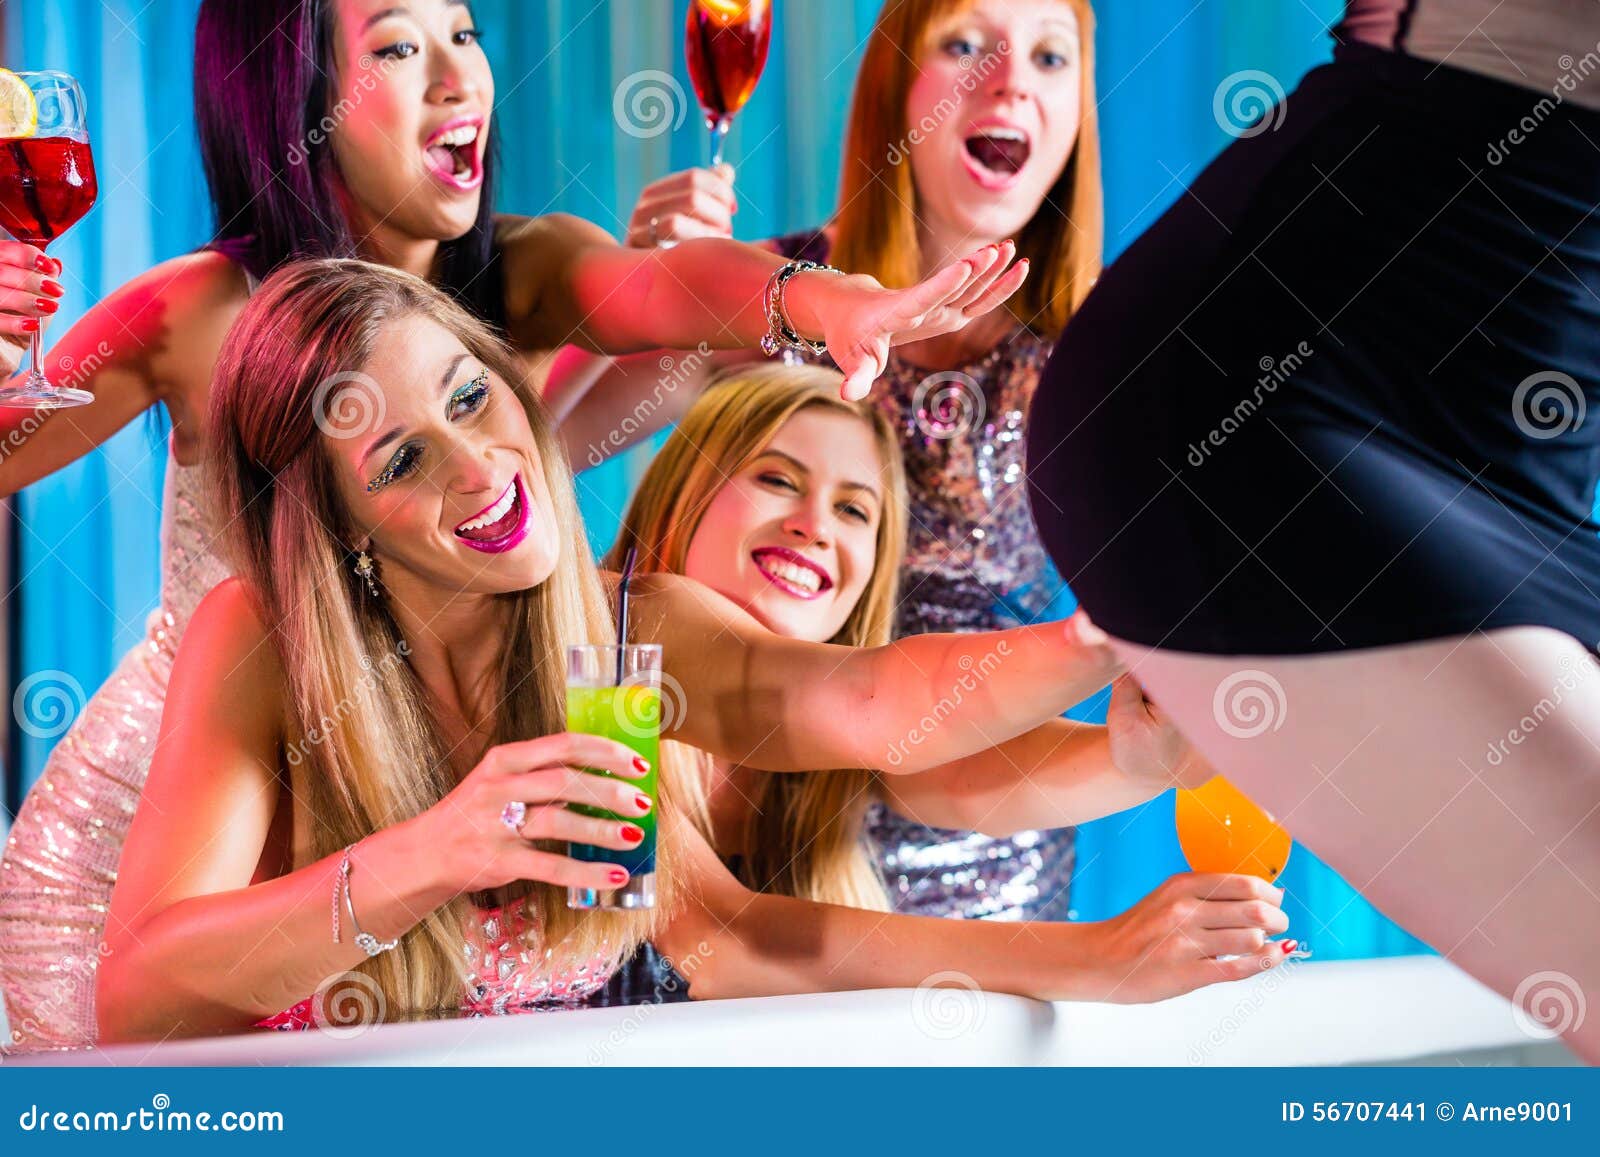 betrunken jugendliche tun striptease auf party